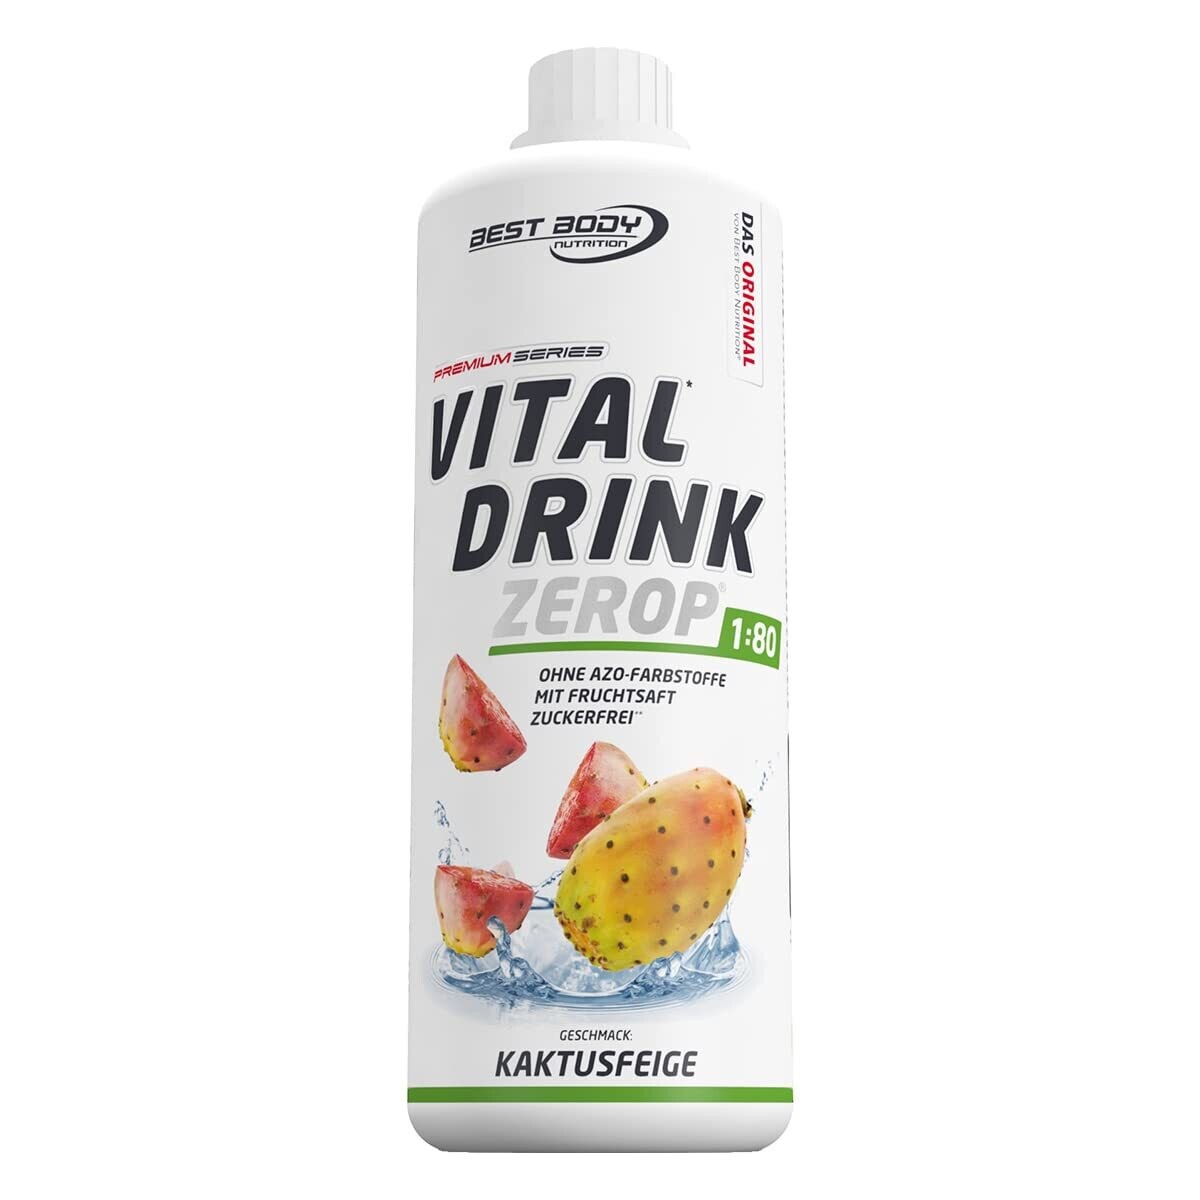 Getränkekonzentrat zuckerfrei Best Body Nutrition Vital Drink ZEROP® - Kaktusfeige 1:80 1 Liter ergibt 80 Liter Fertiggetränk